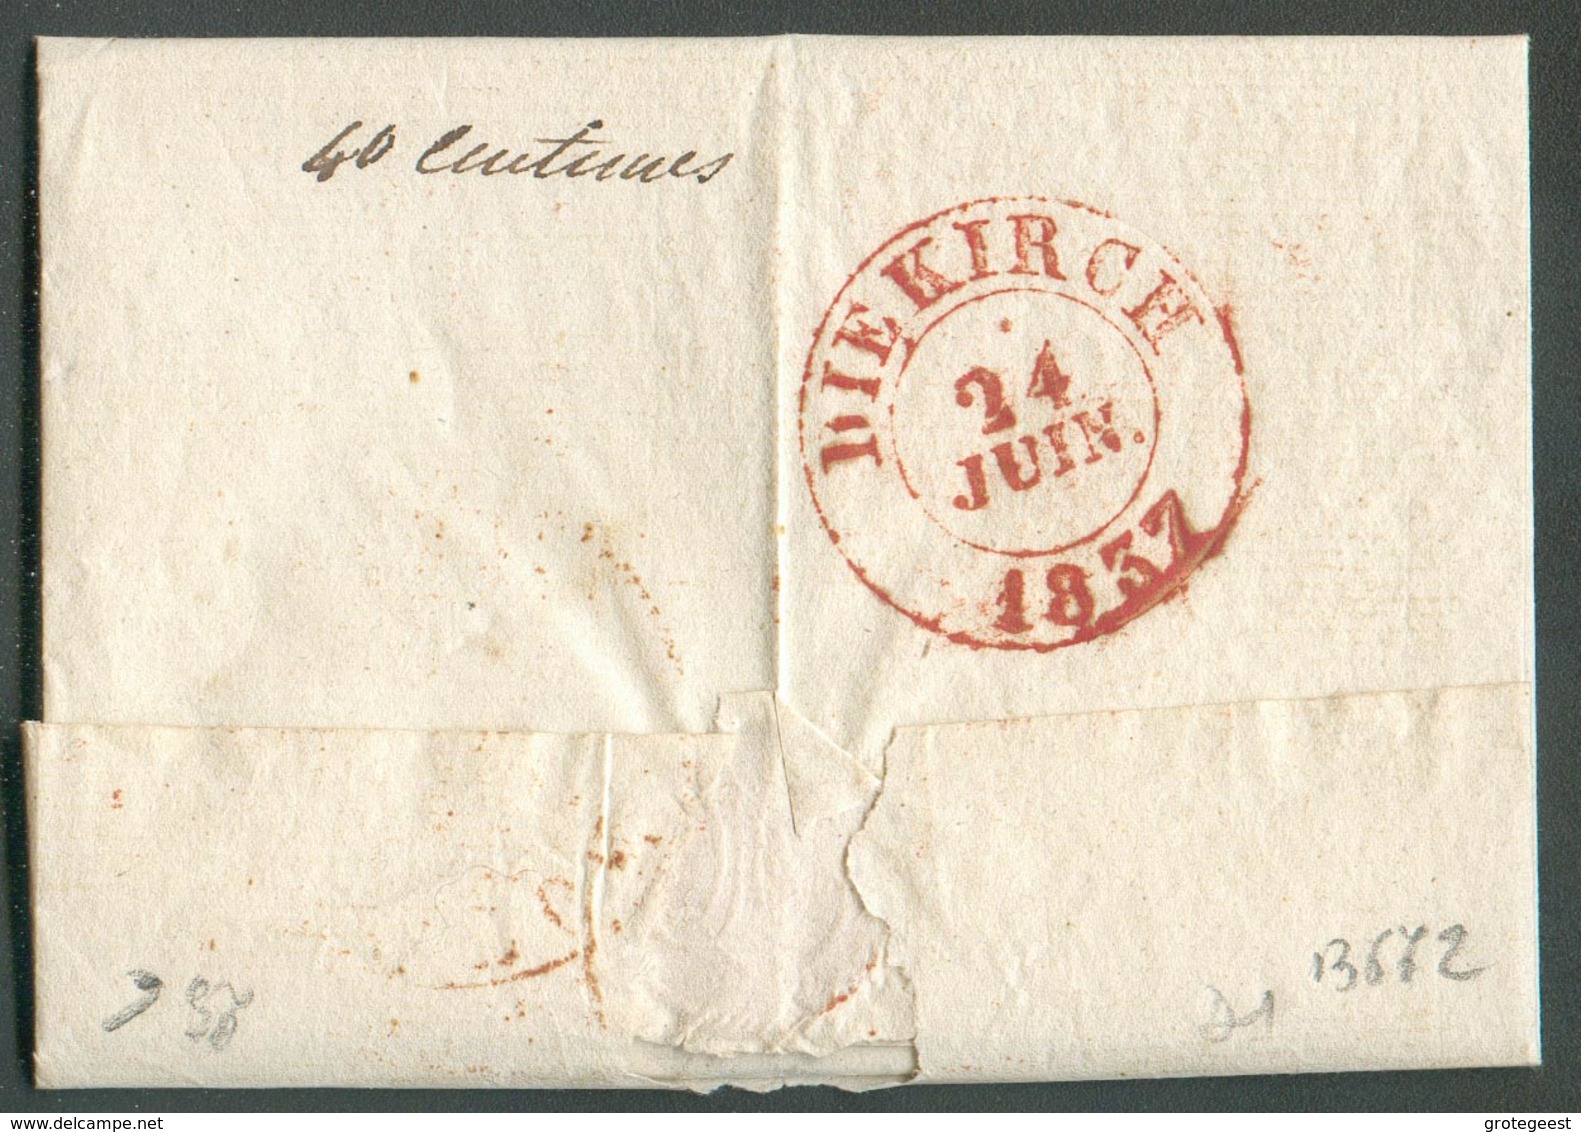 LAC De VIRTON (càd Rouge) Le 23 Juin 1837 Au Baron De Blochausen à Birtrange (man. 'près Ettelbruck), Port '4' Décimes - 1830-1849 (Belgique Indépendante)